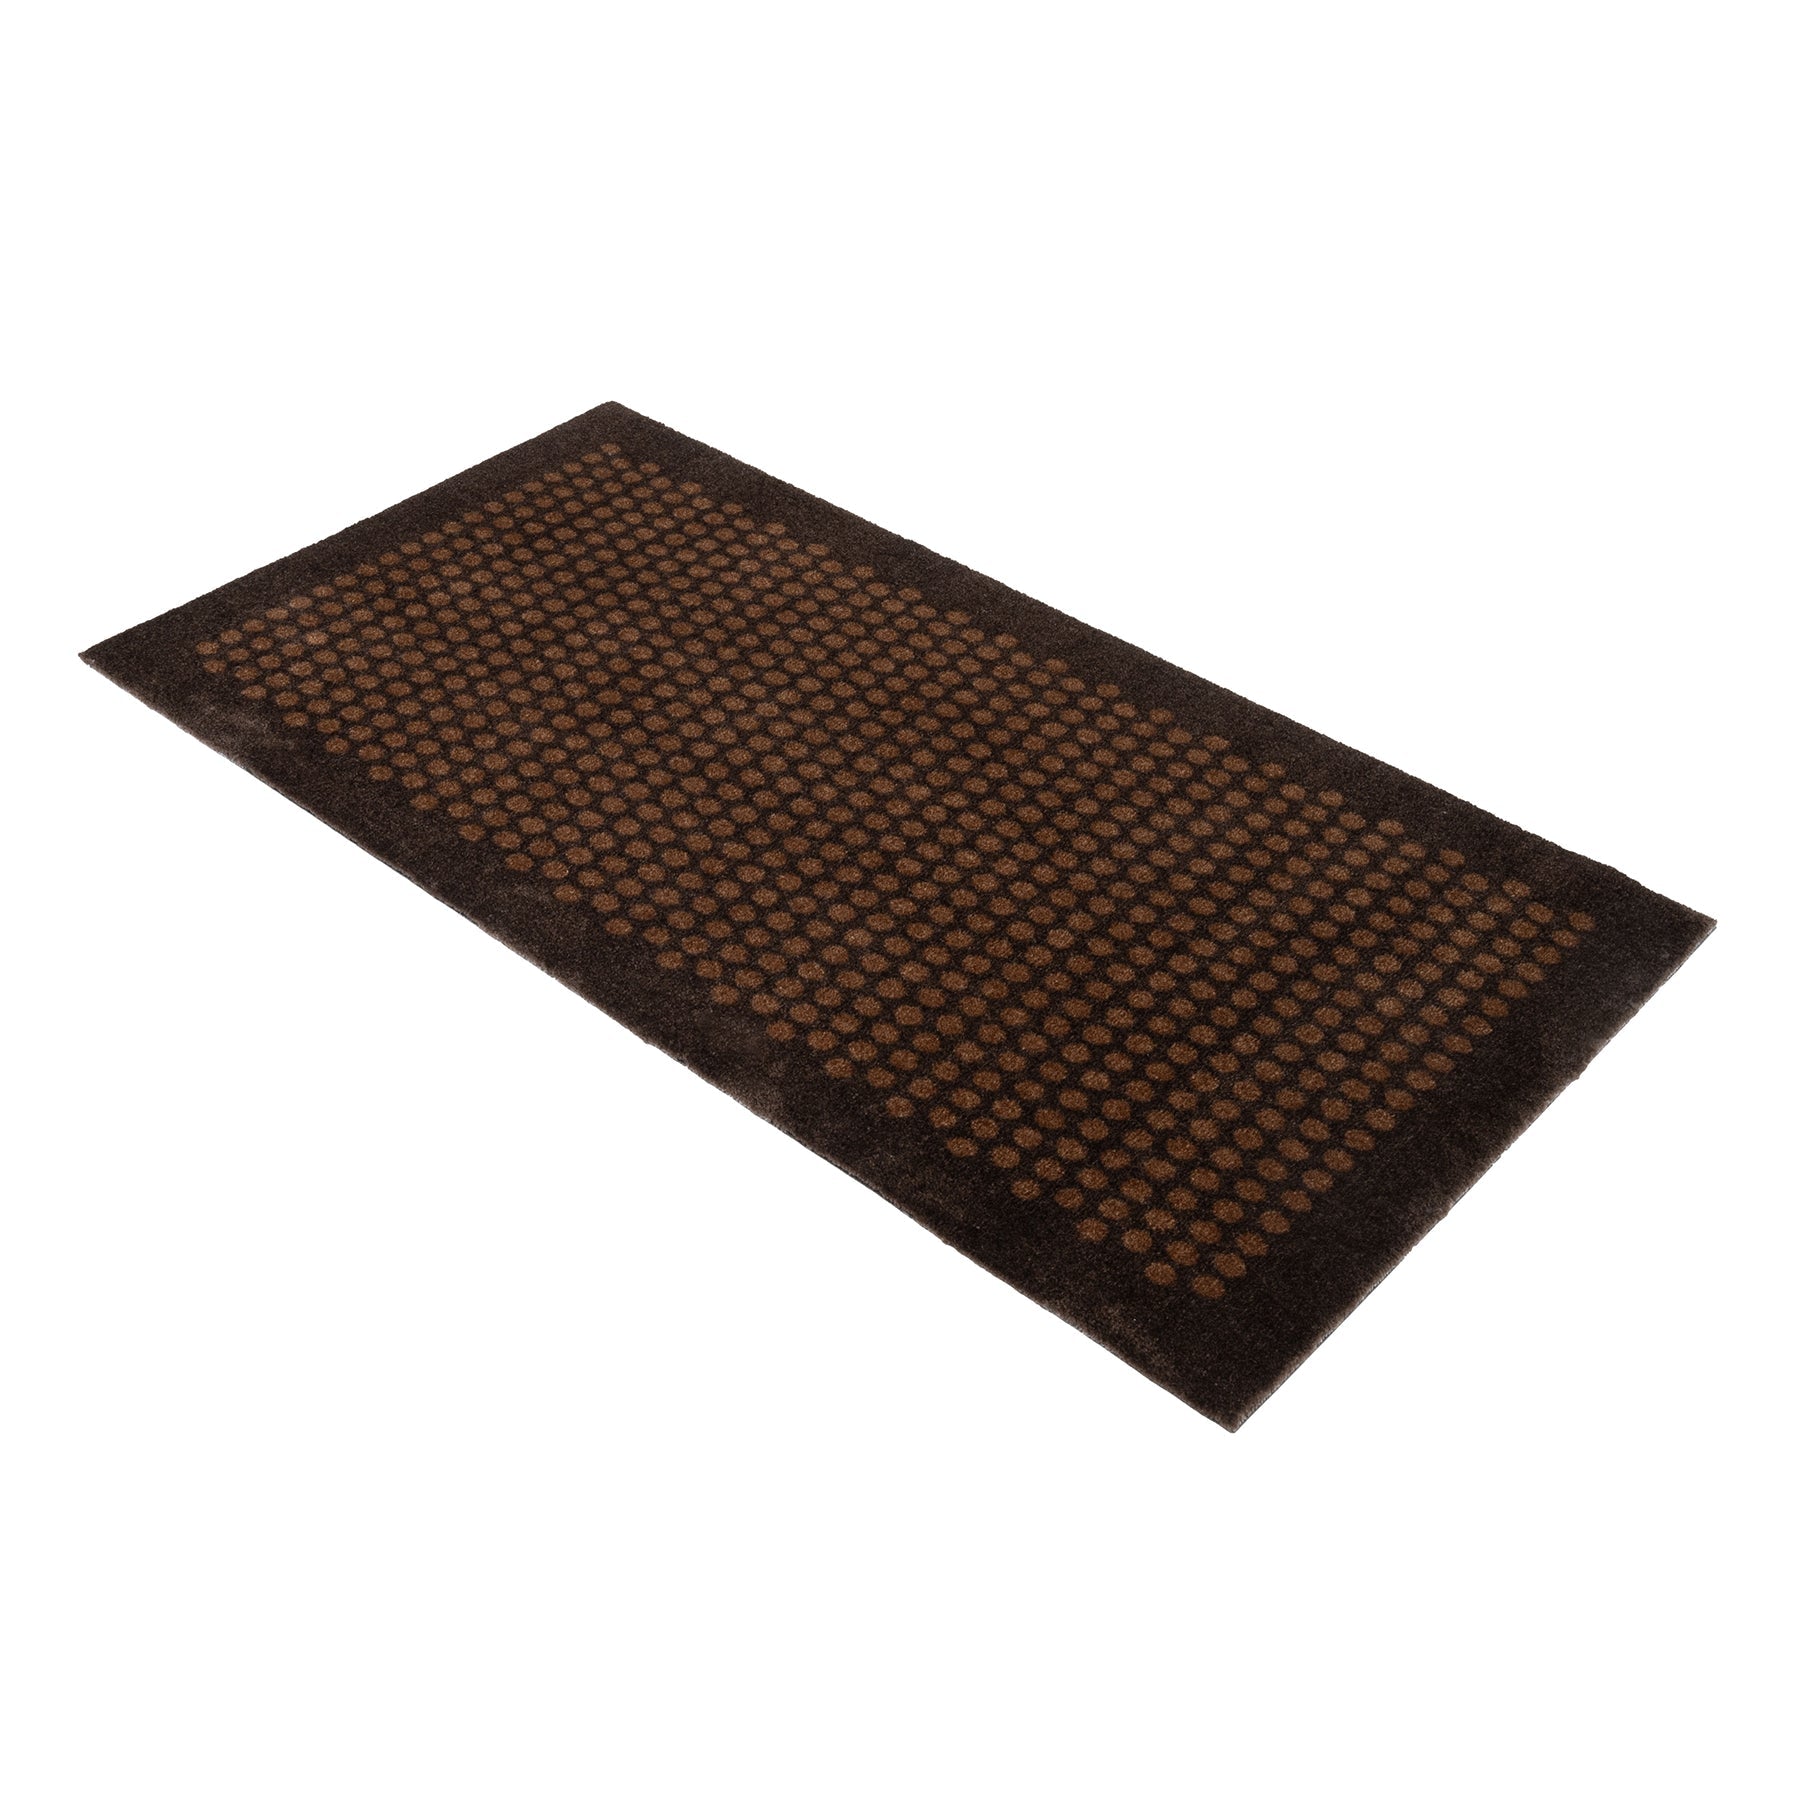 News - Carpet/Must 67 x 120 cm - Dot/Cognac -Dark Brown